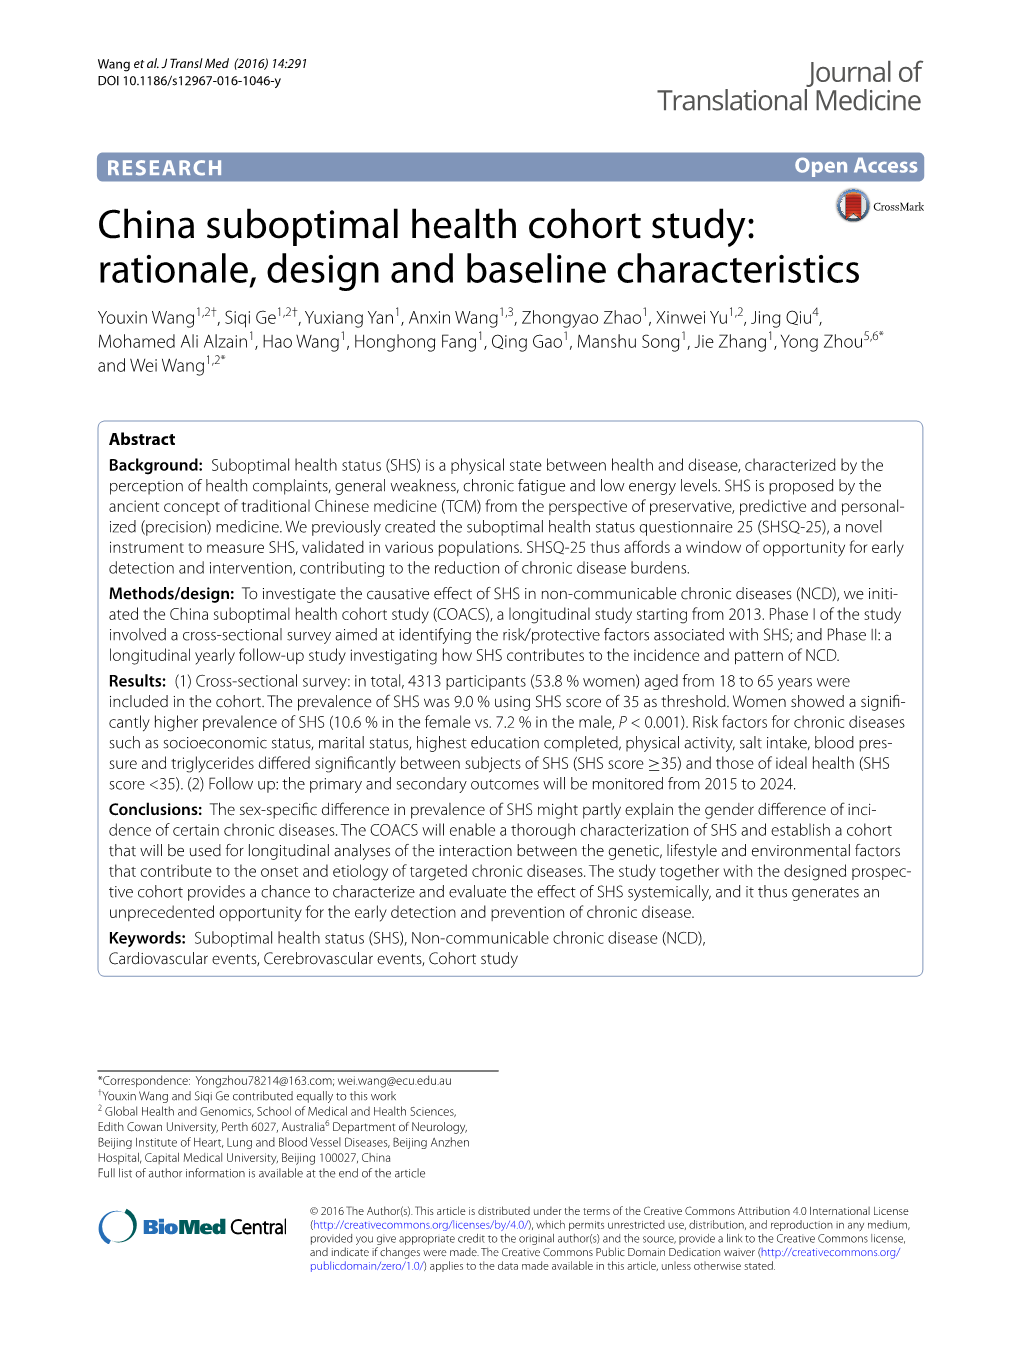 China Suboptimal Health Cohort Study